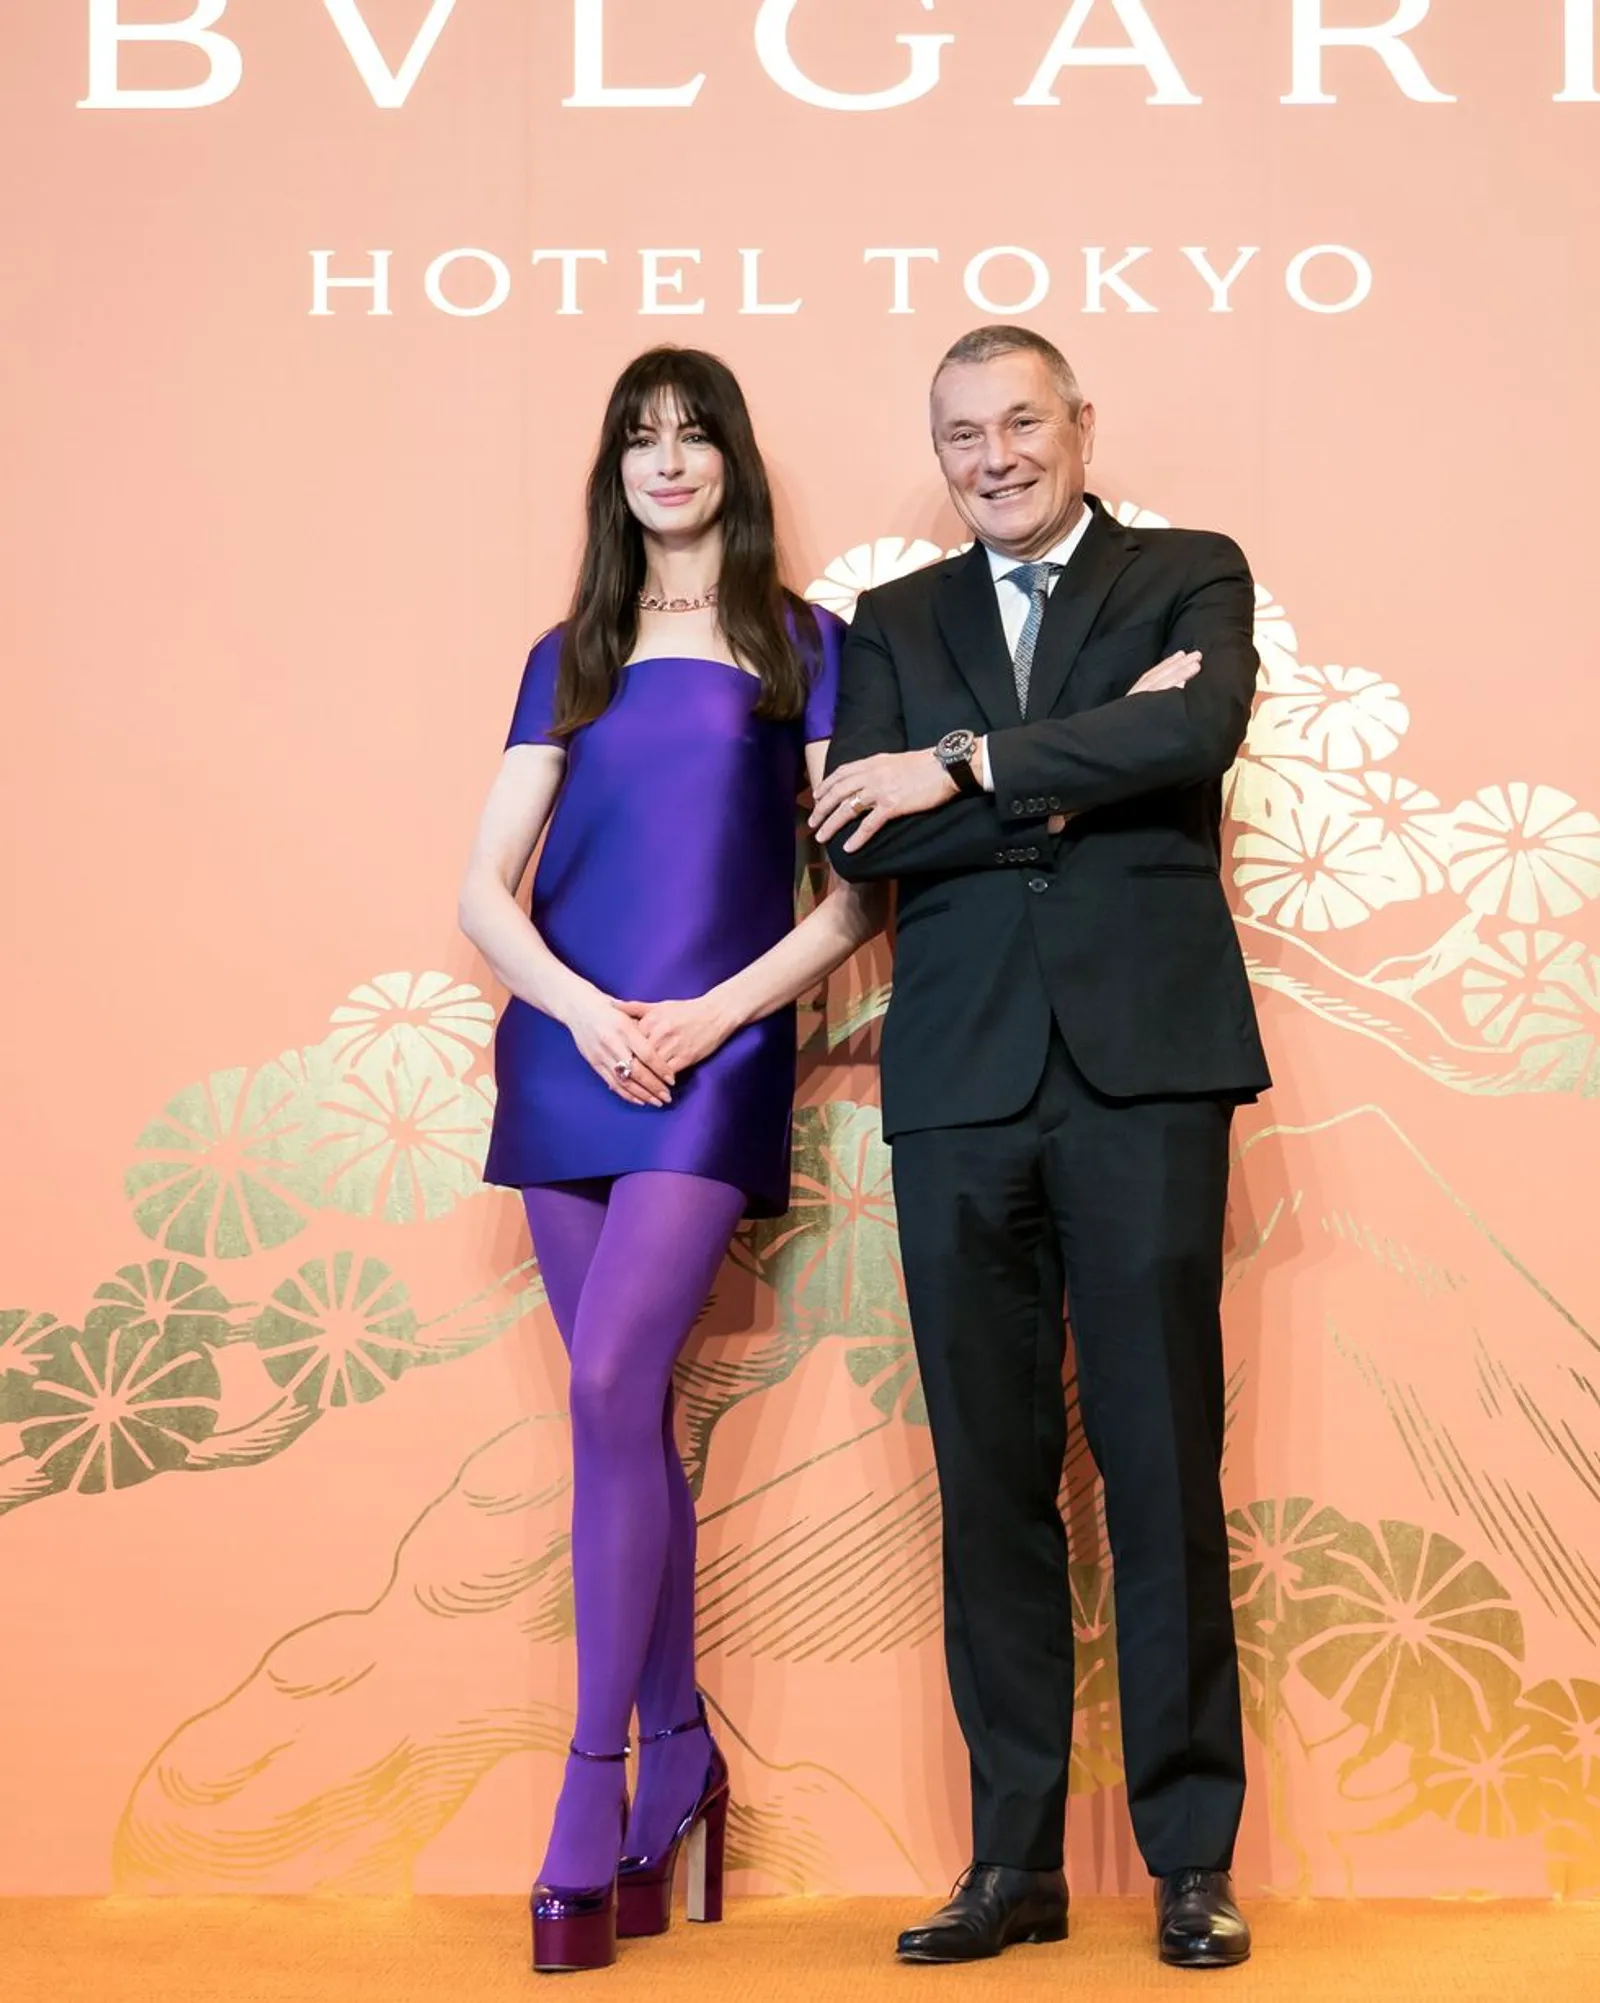 Penampilan Stunning Anne Hathaway di Pembukaan Bulgari Hotel Tokyo